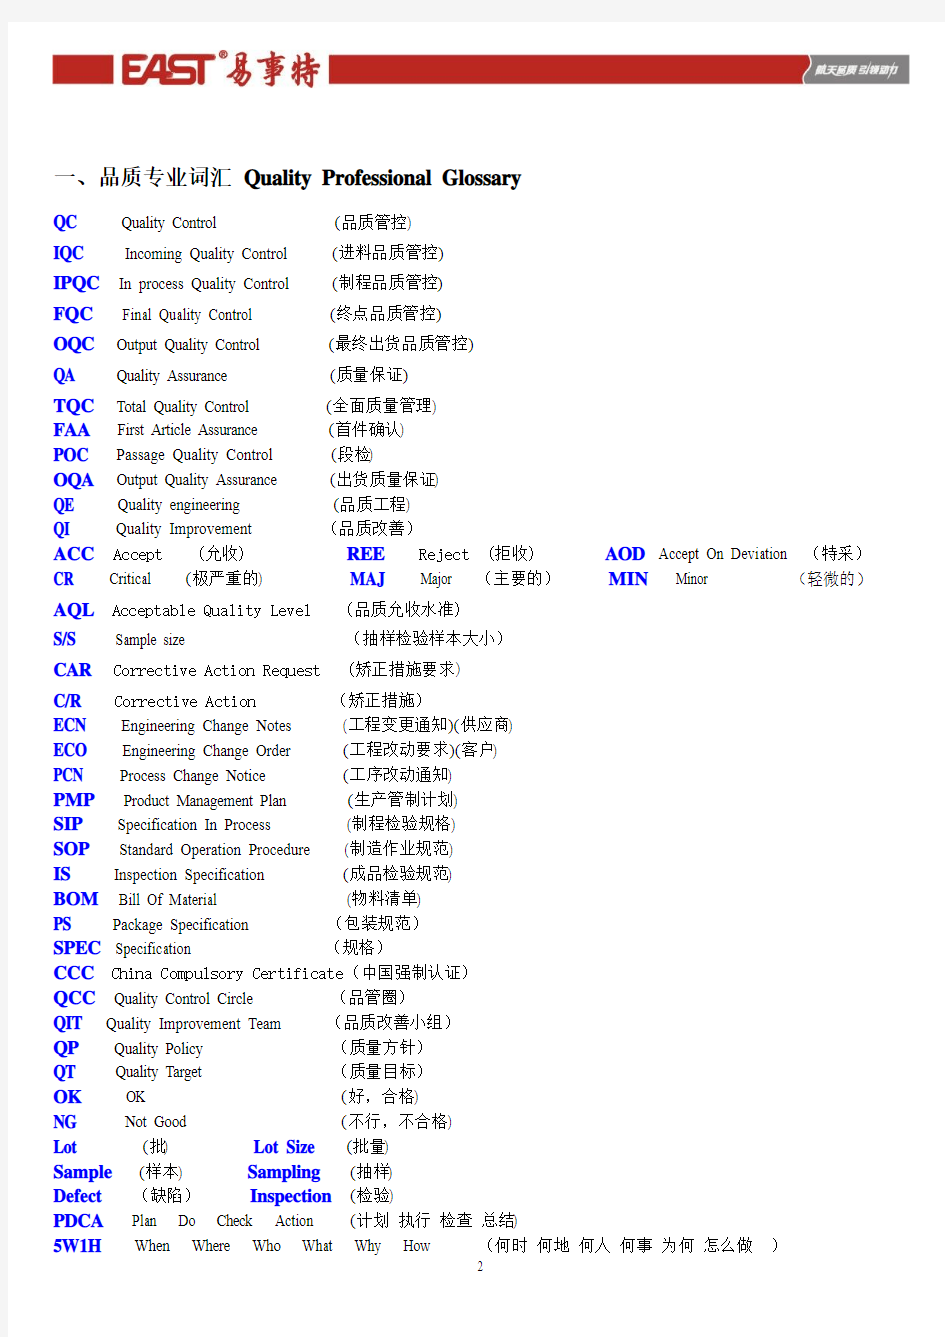 中英文单词对照表(品质专用)1